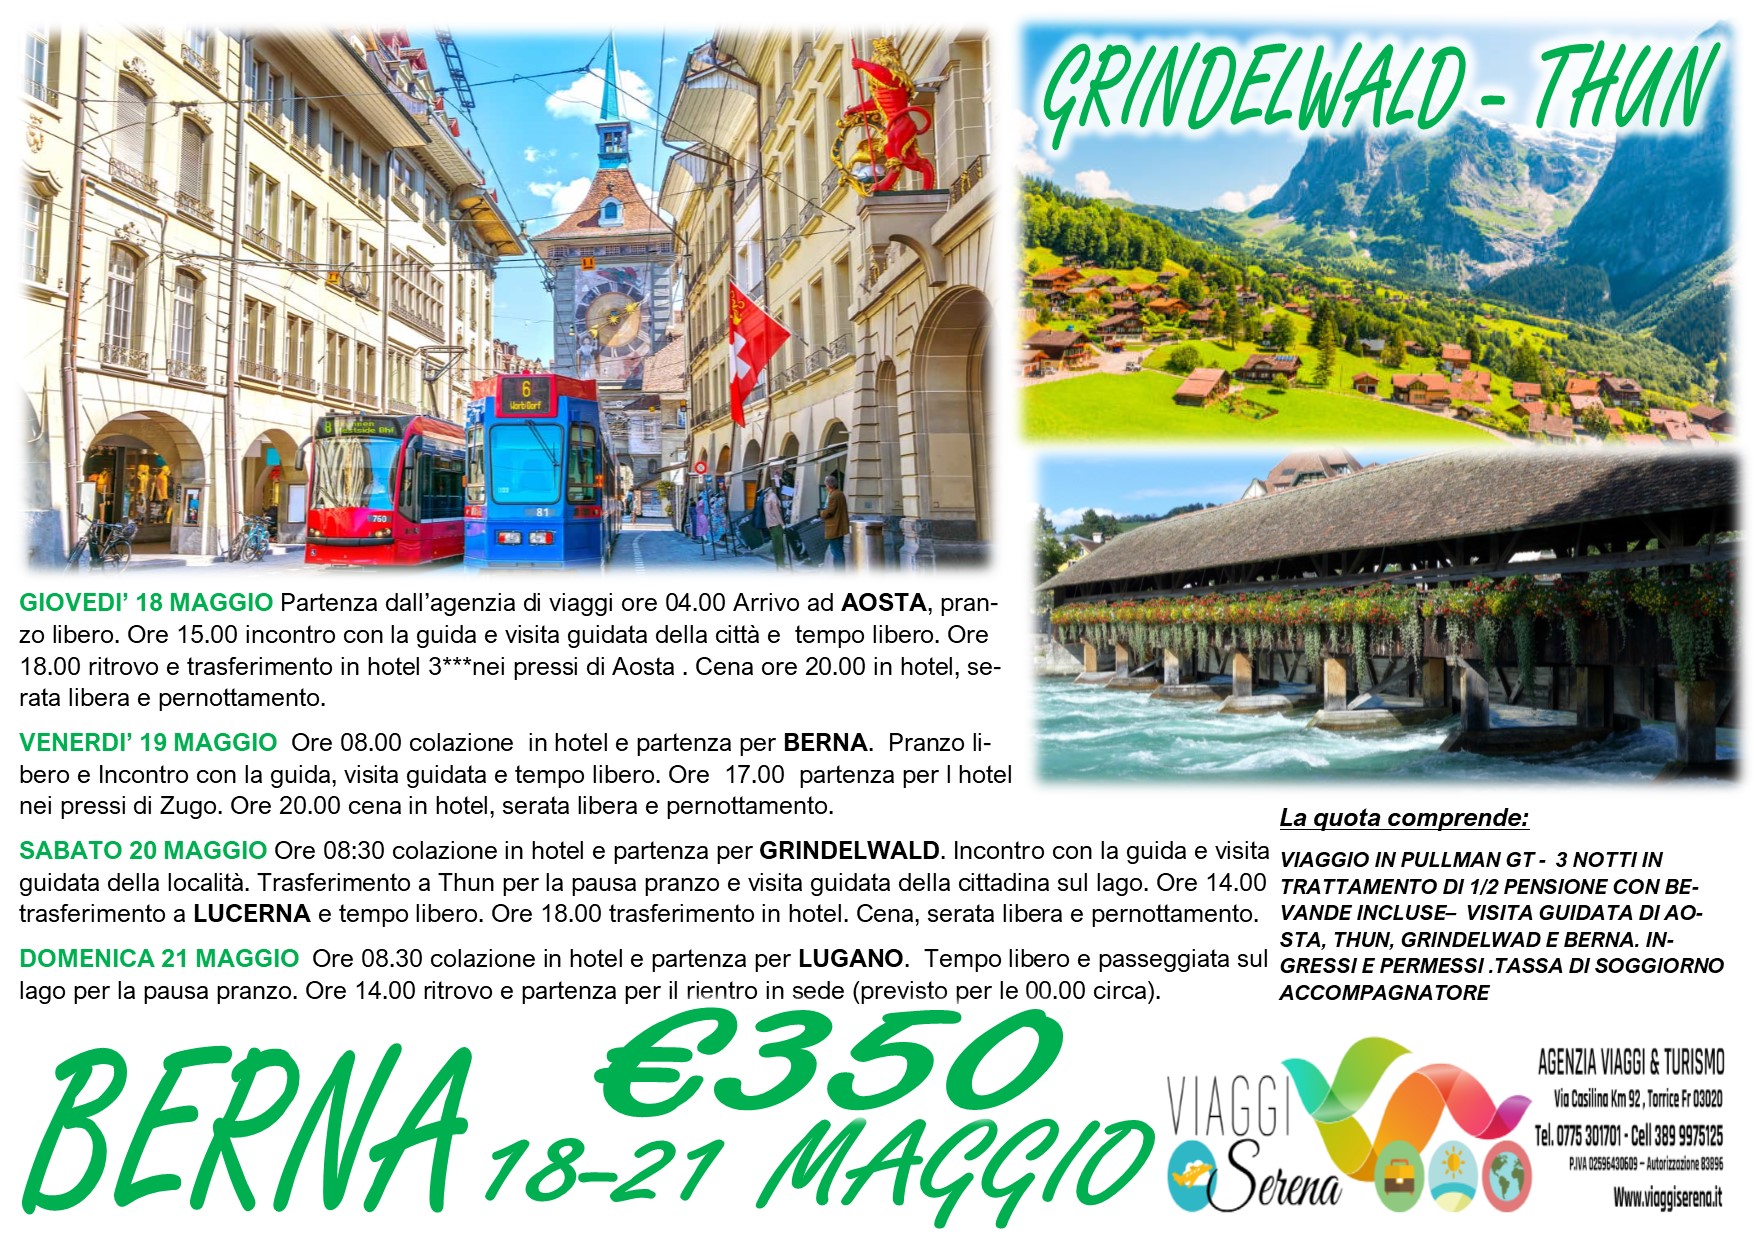 Viaggi di Gruppo: “Tour Svizzera” Aosta, Berna, Grindelwald & Lugano 18-21 Maggio €350,00